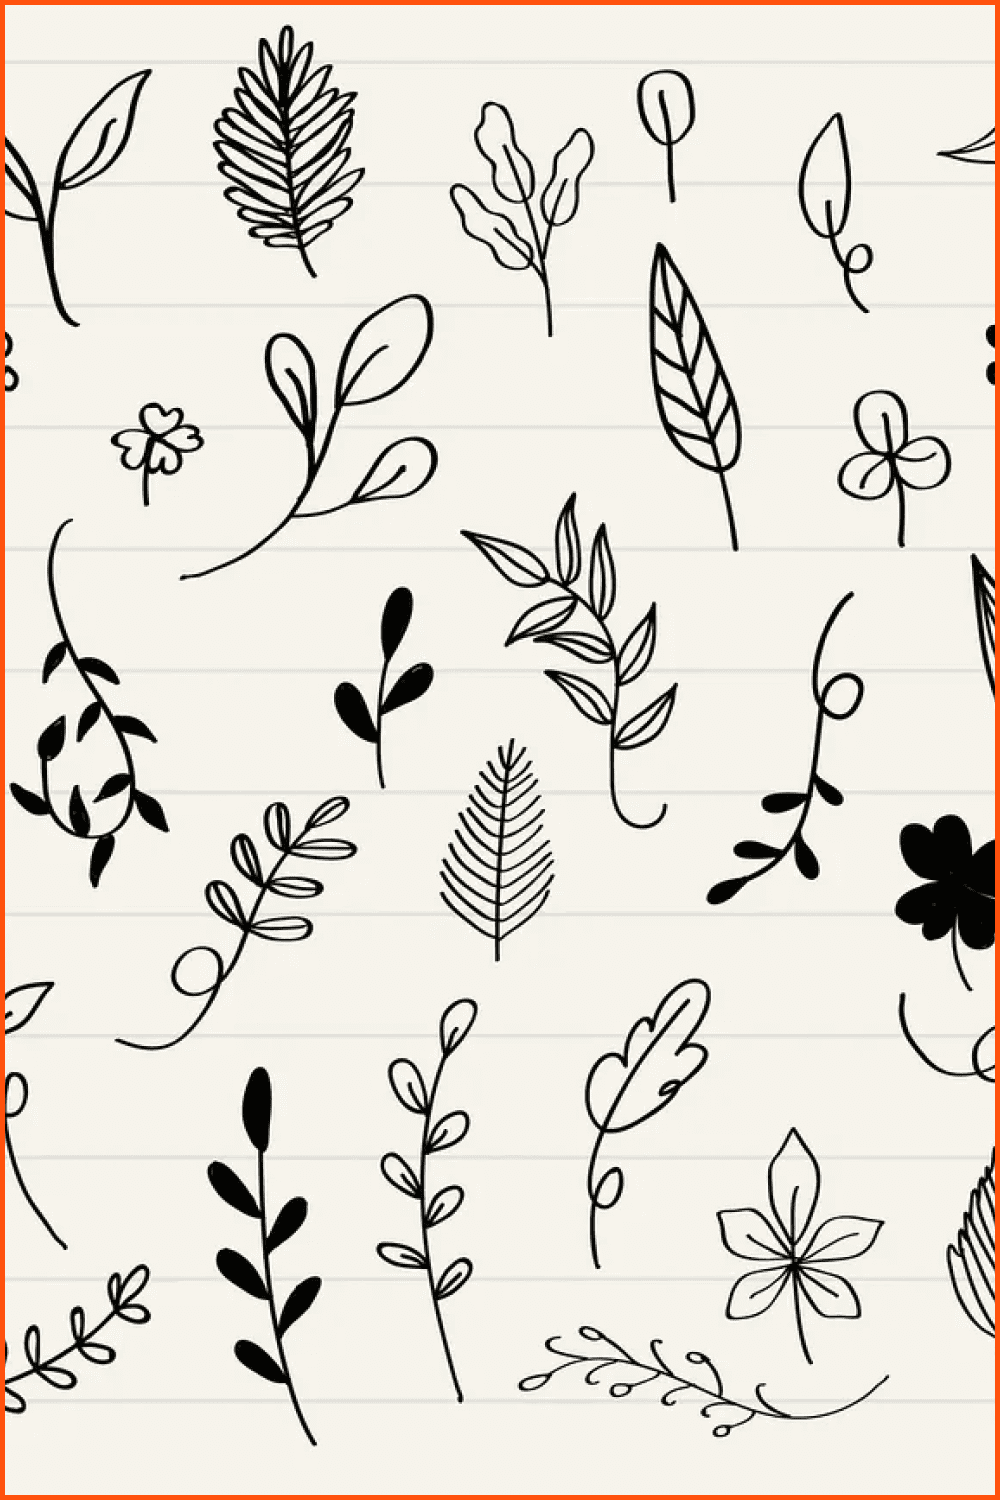 Various leaves doodles.